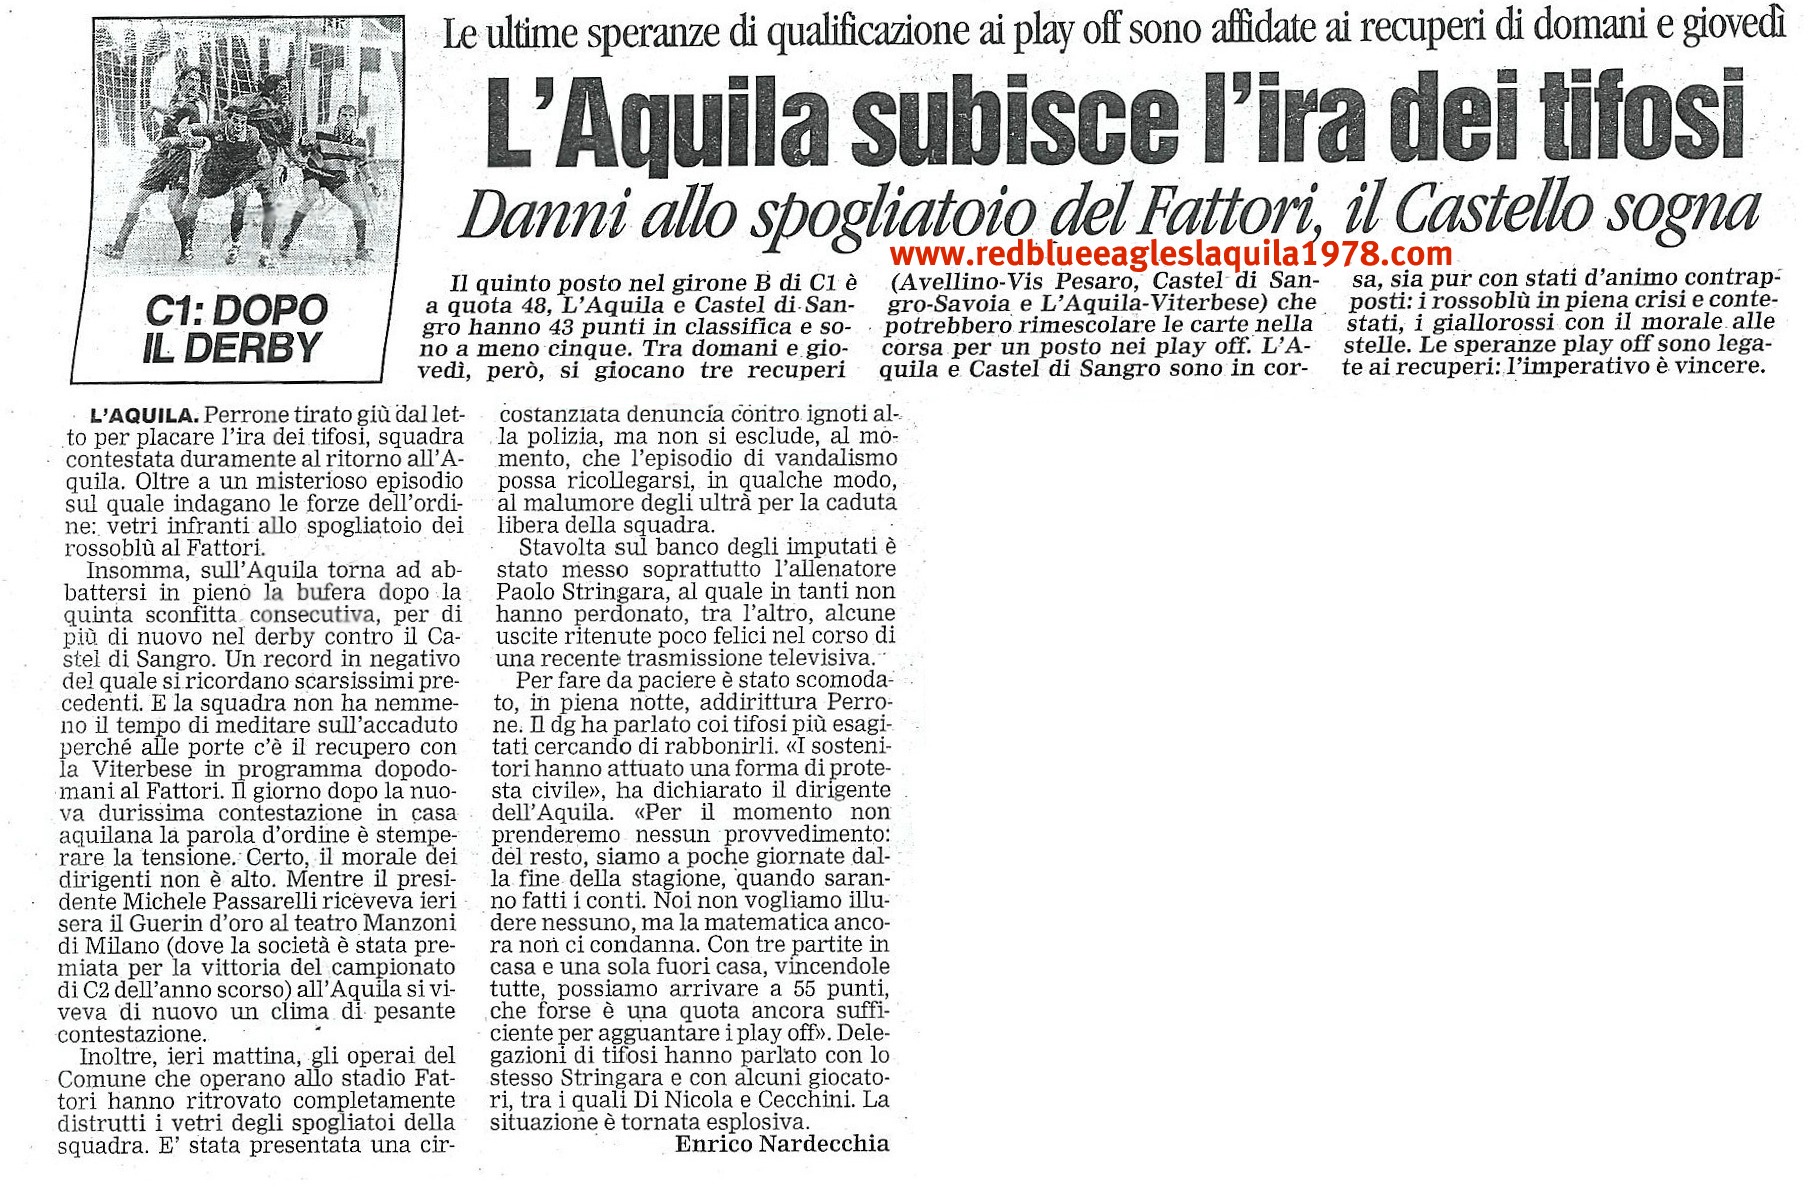 Contestazione e danni agli spogliatoi al rientro dalla trasferta di Castel di Sangro 22-04-2001 serie C1